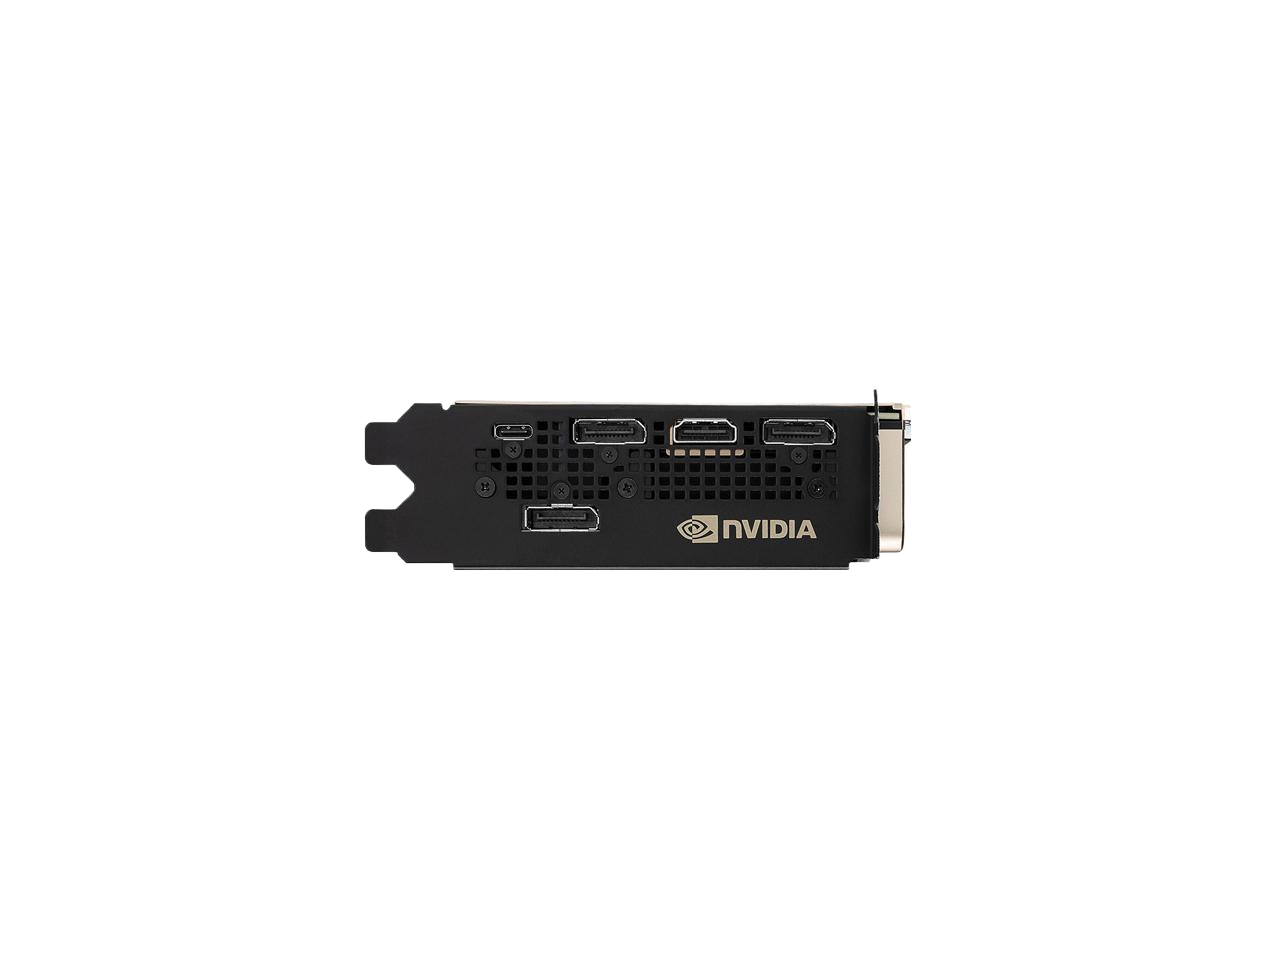 NVIDIA TITAN RTX 24GB GDDR6 PCI Express 3.0 x16 Video Card 900-1G150-2500-000 SB